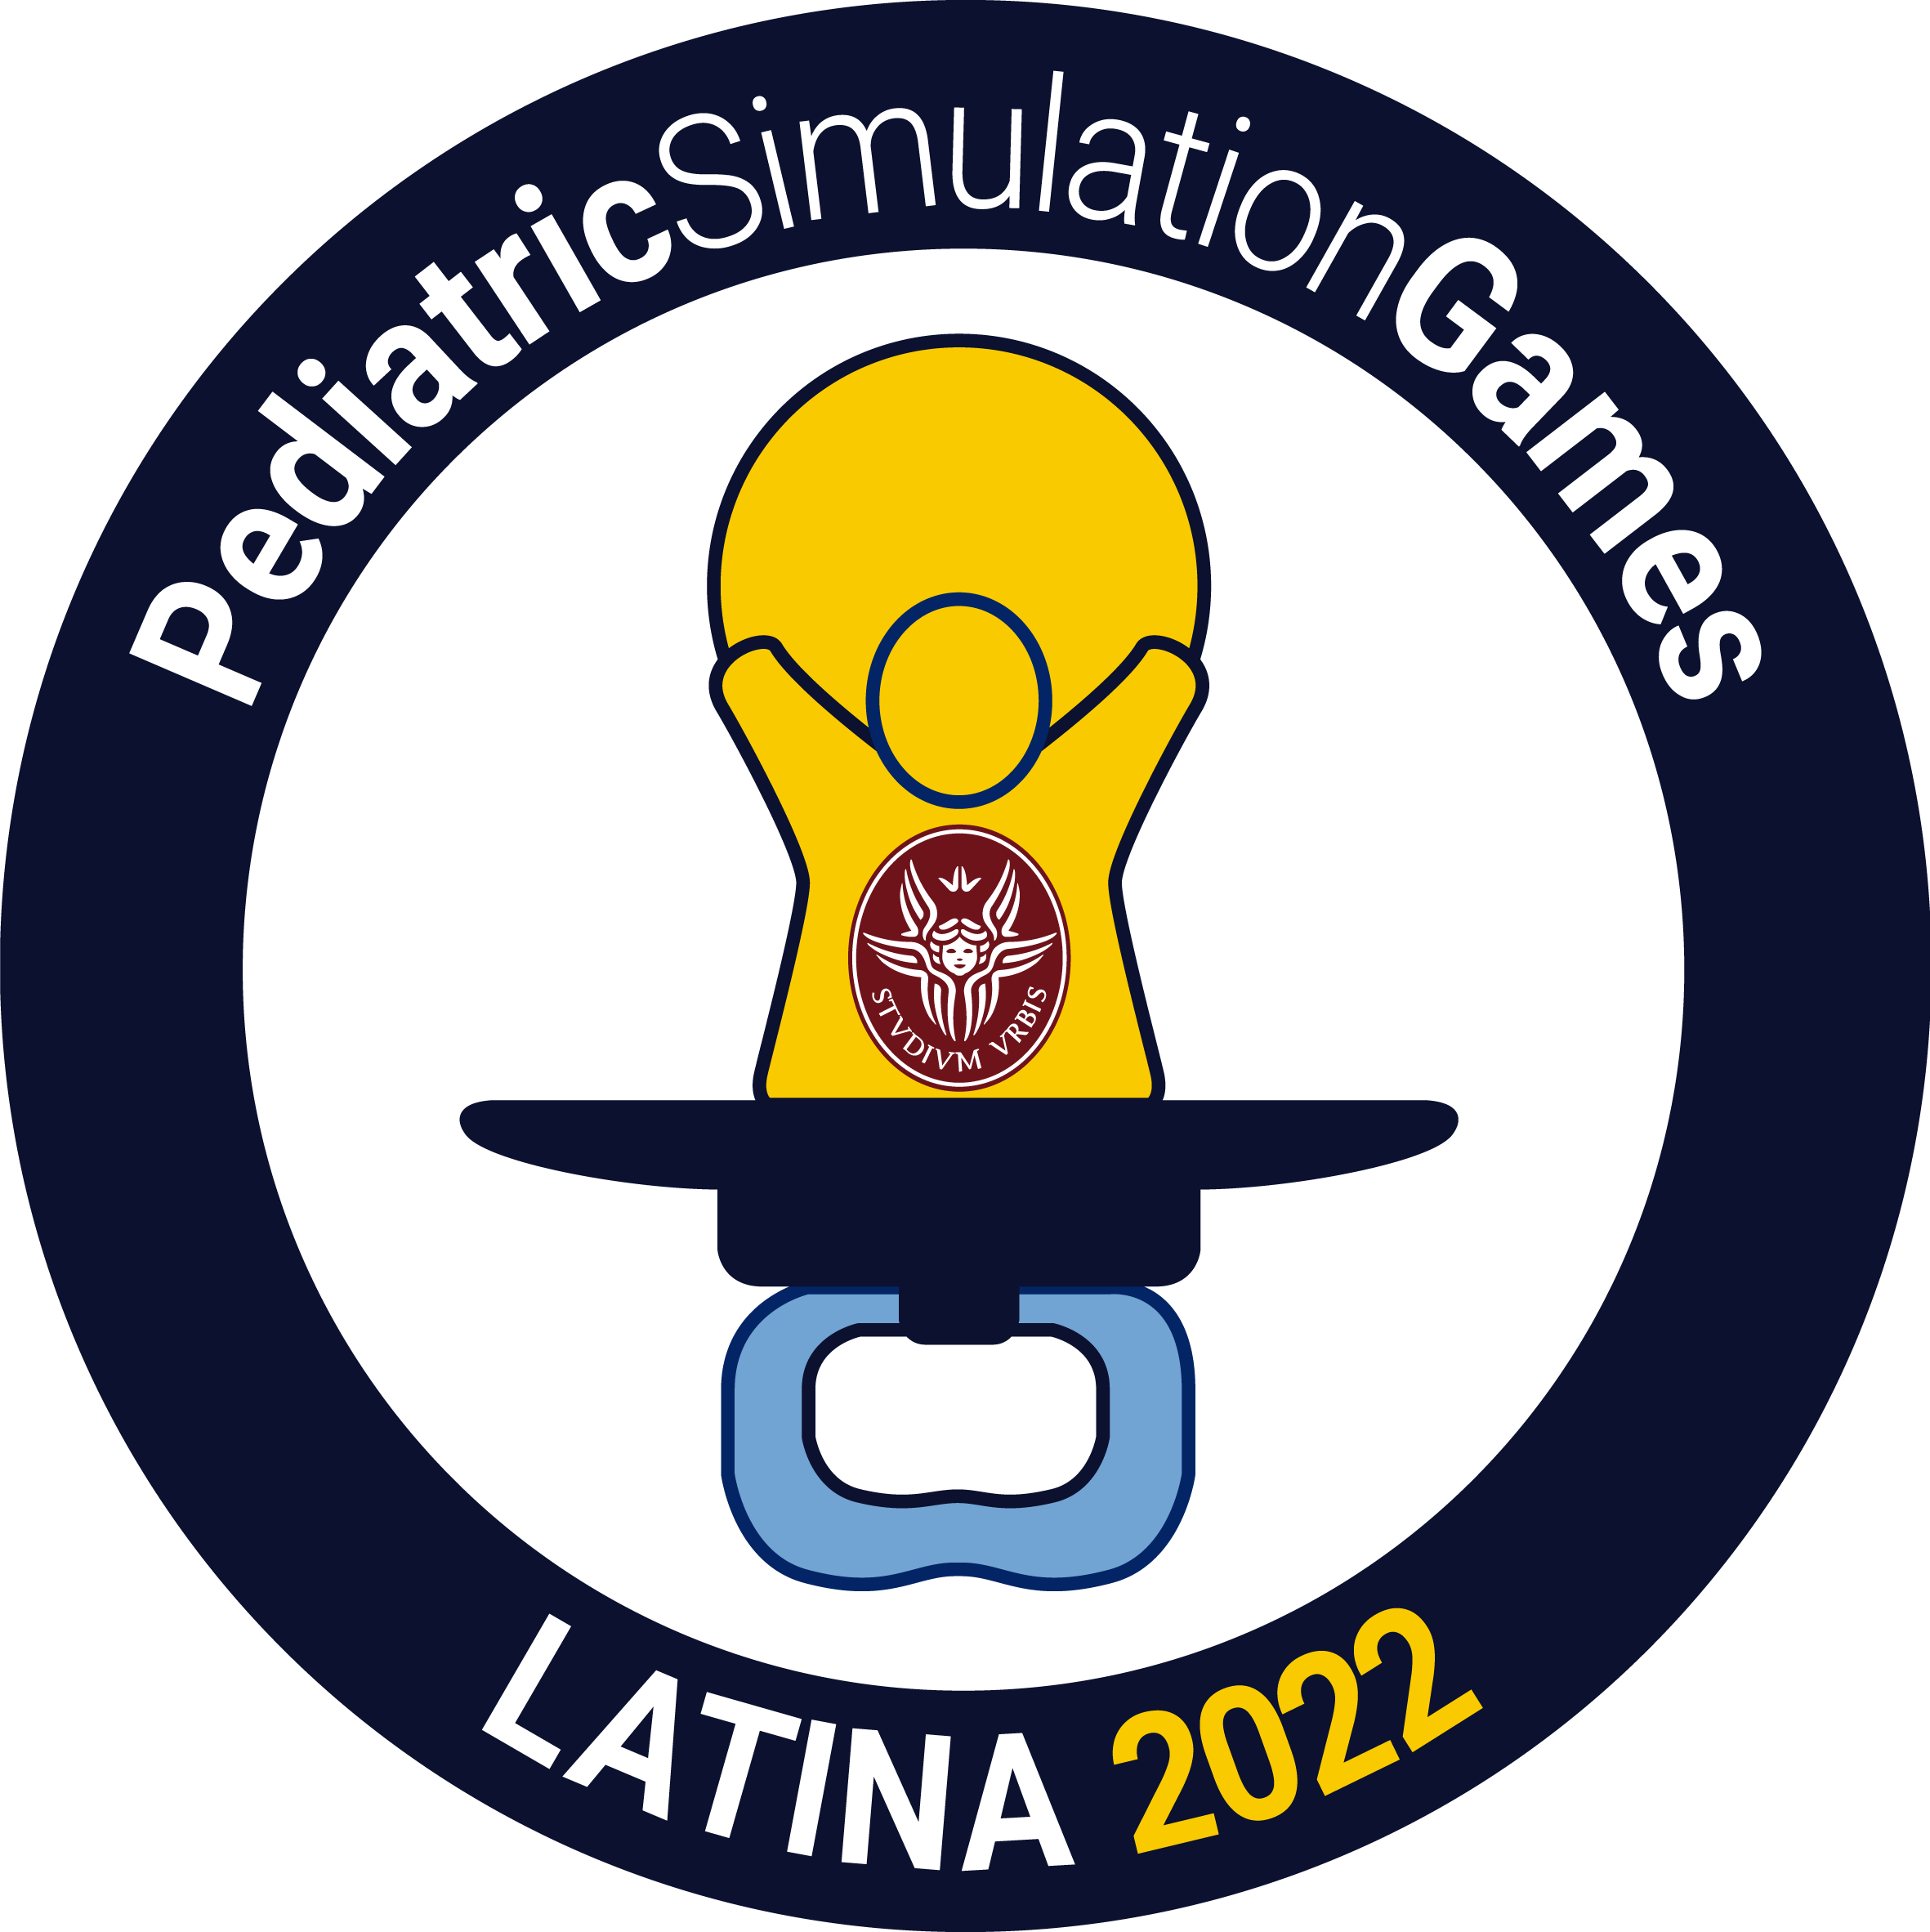 Università degli Studi di Bari - Pediatric Simulation Games